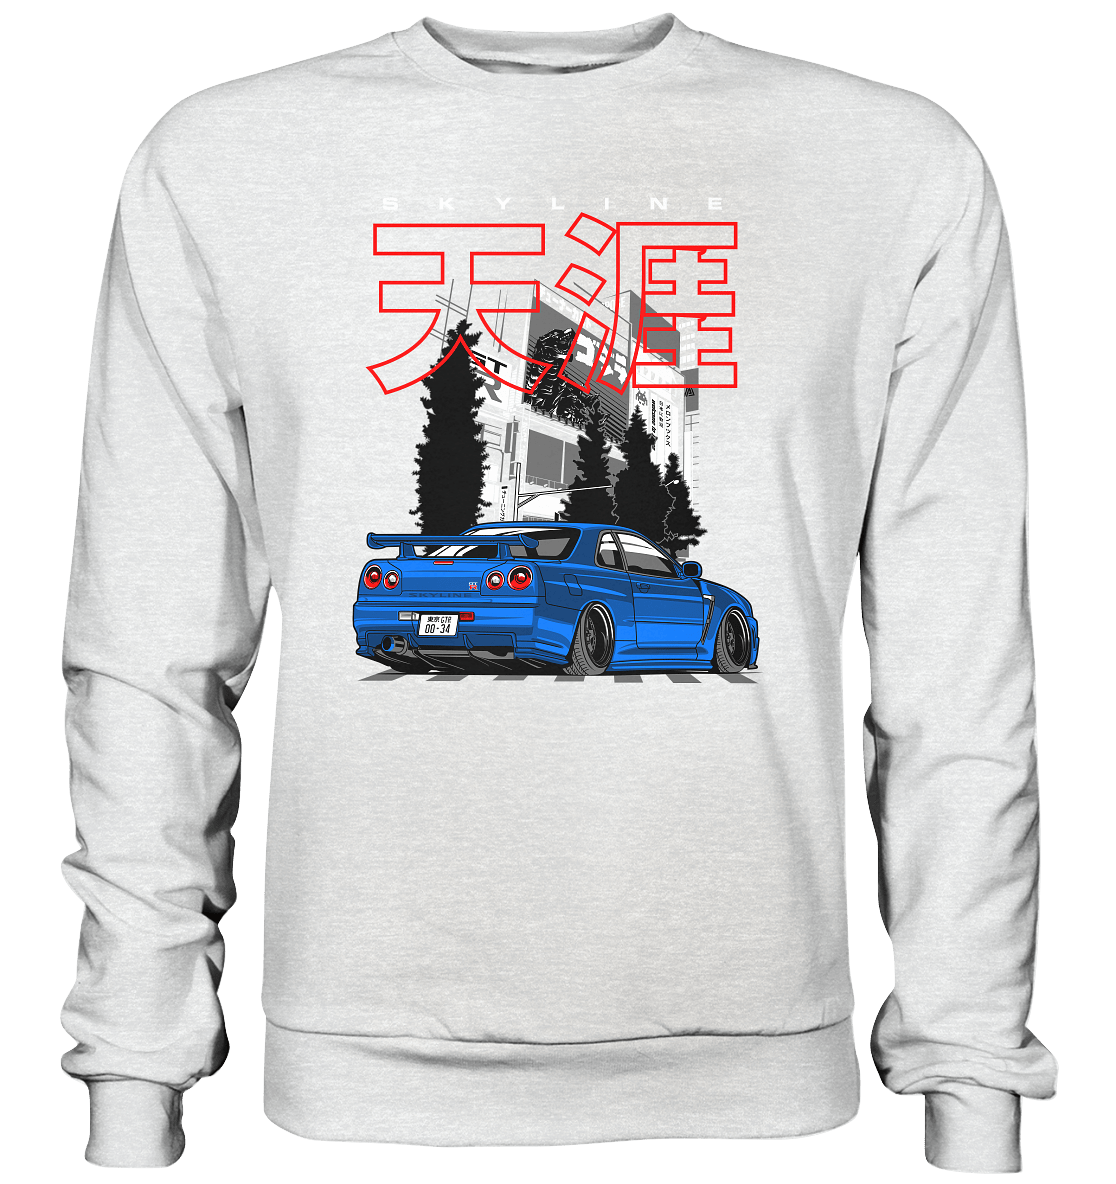 Stanced Skyline R34 GT-R - Premium Sweatshirt - MotoMerch.de